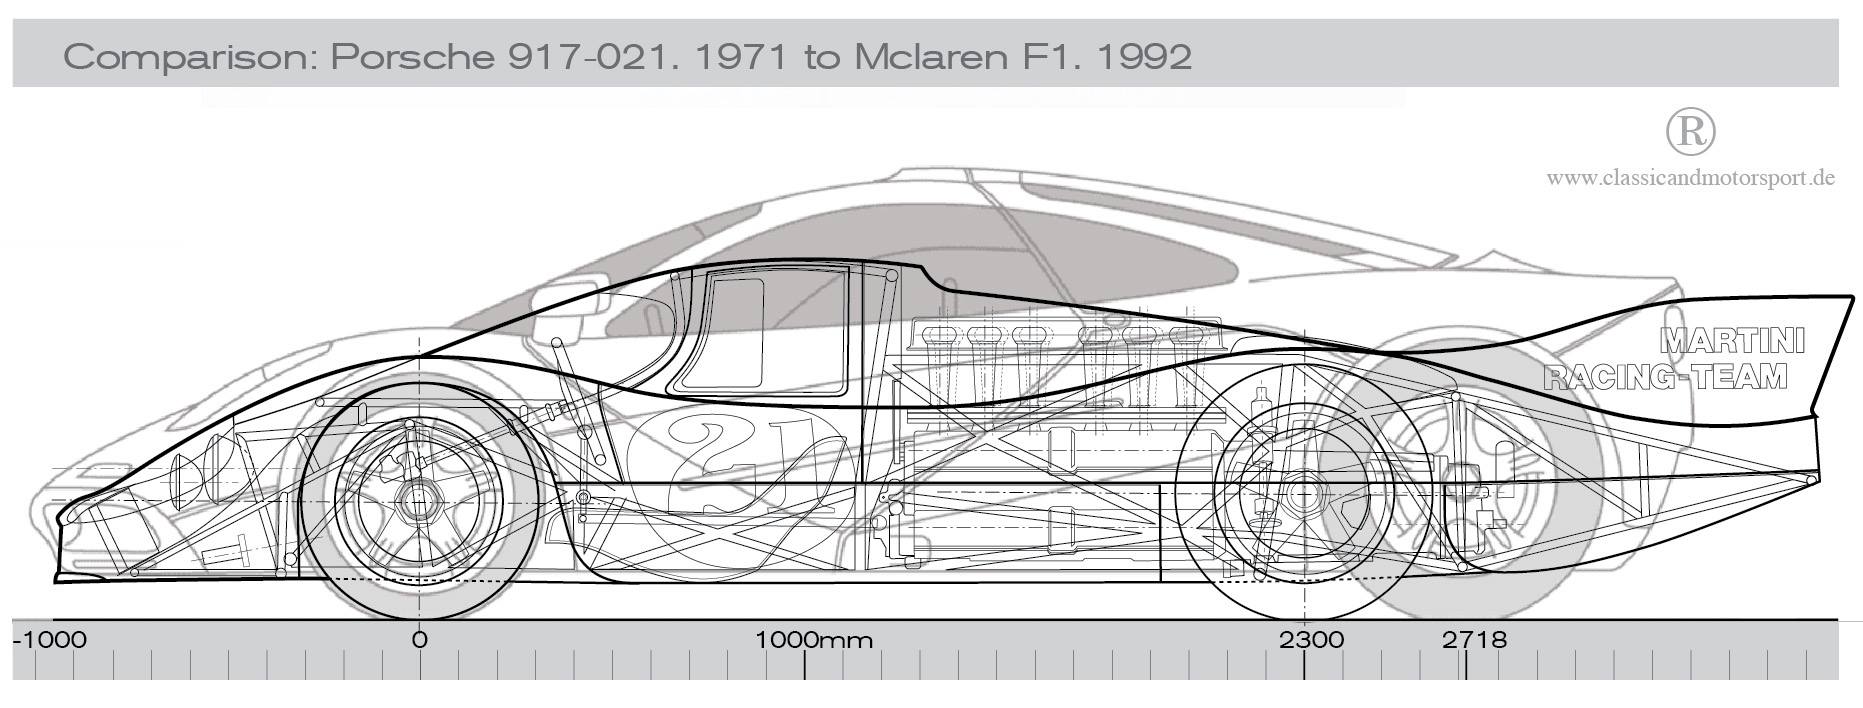 Porsche 917-042 LH & McLaren F1 — size comparison | Porsche cars history